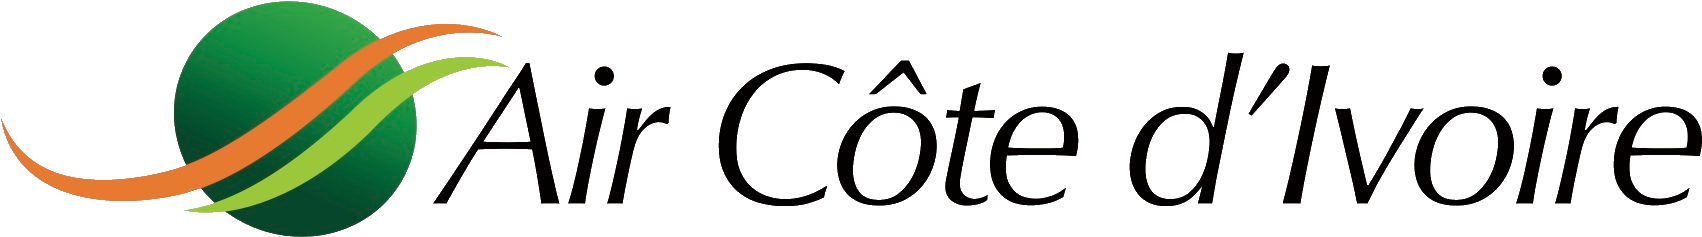 Air Cote Divoire Logo